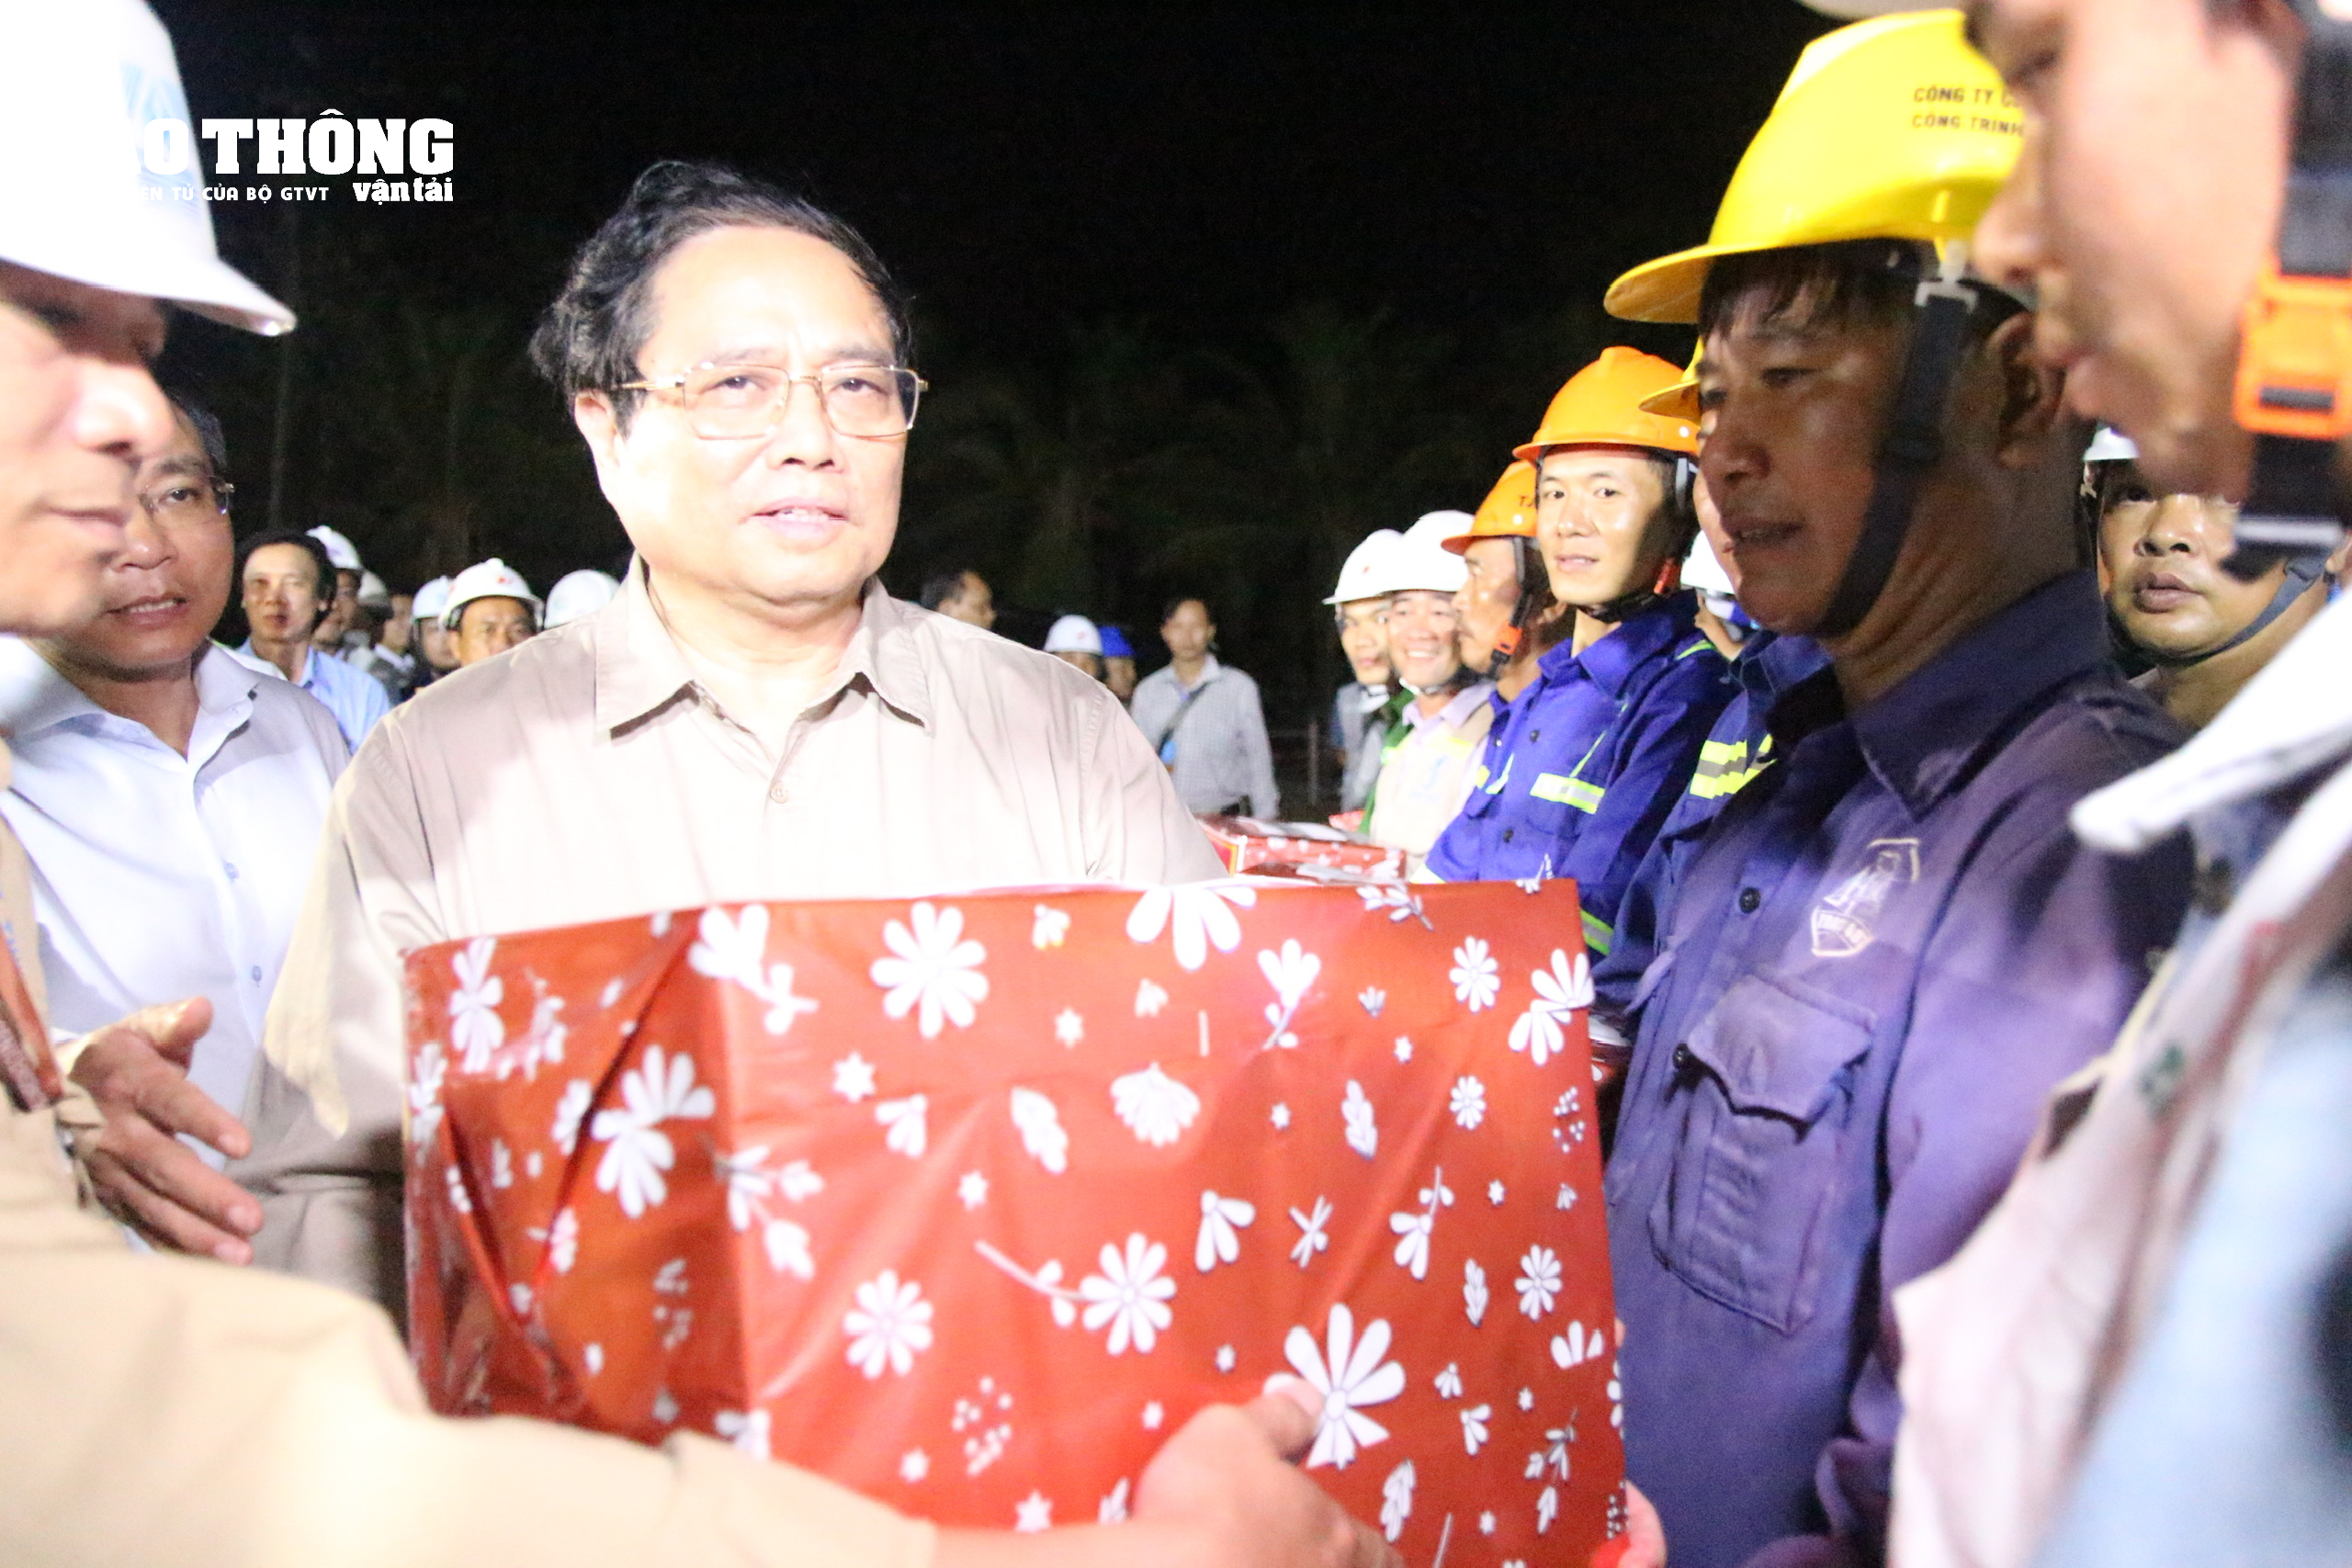 Chùm ảnh Thủ tướng Phạm Minh Chính kiểm tra cầu Rạch Miễu 2 trong đêm- Ảnh 12.